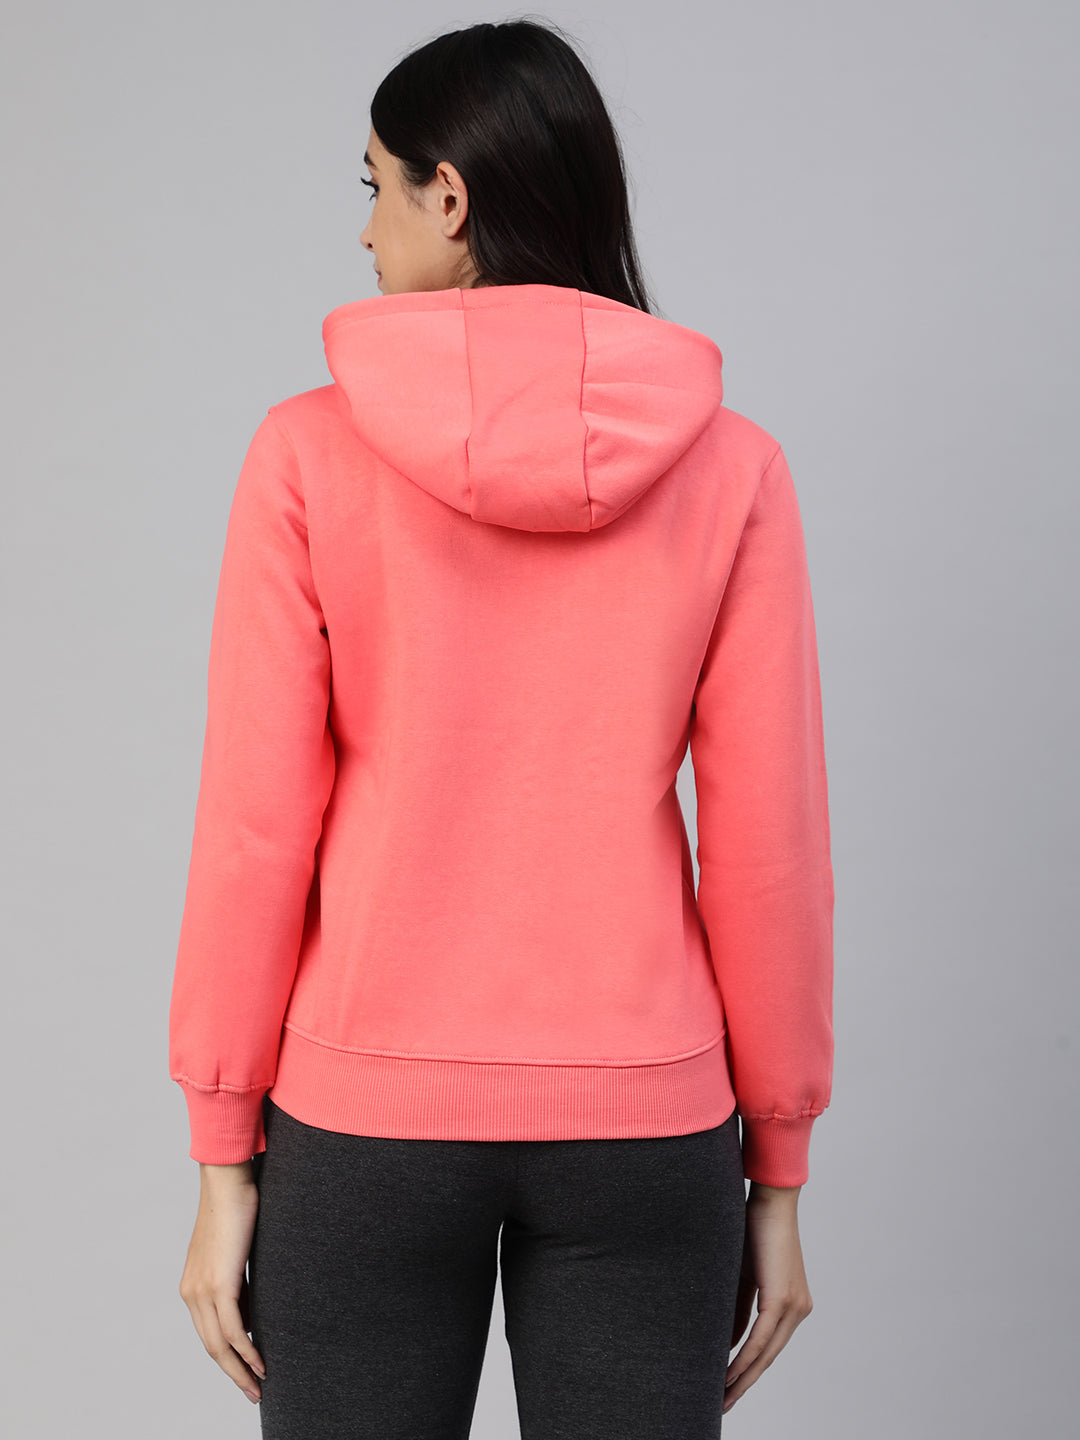 Pink zipper hoodie jacket